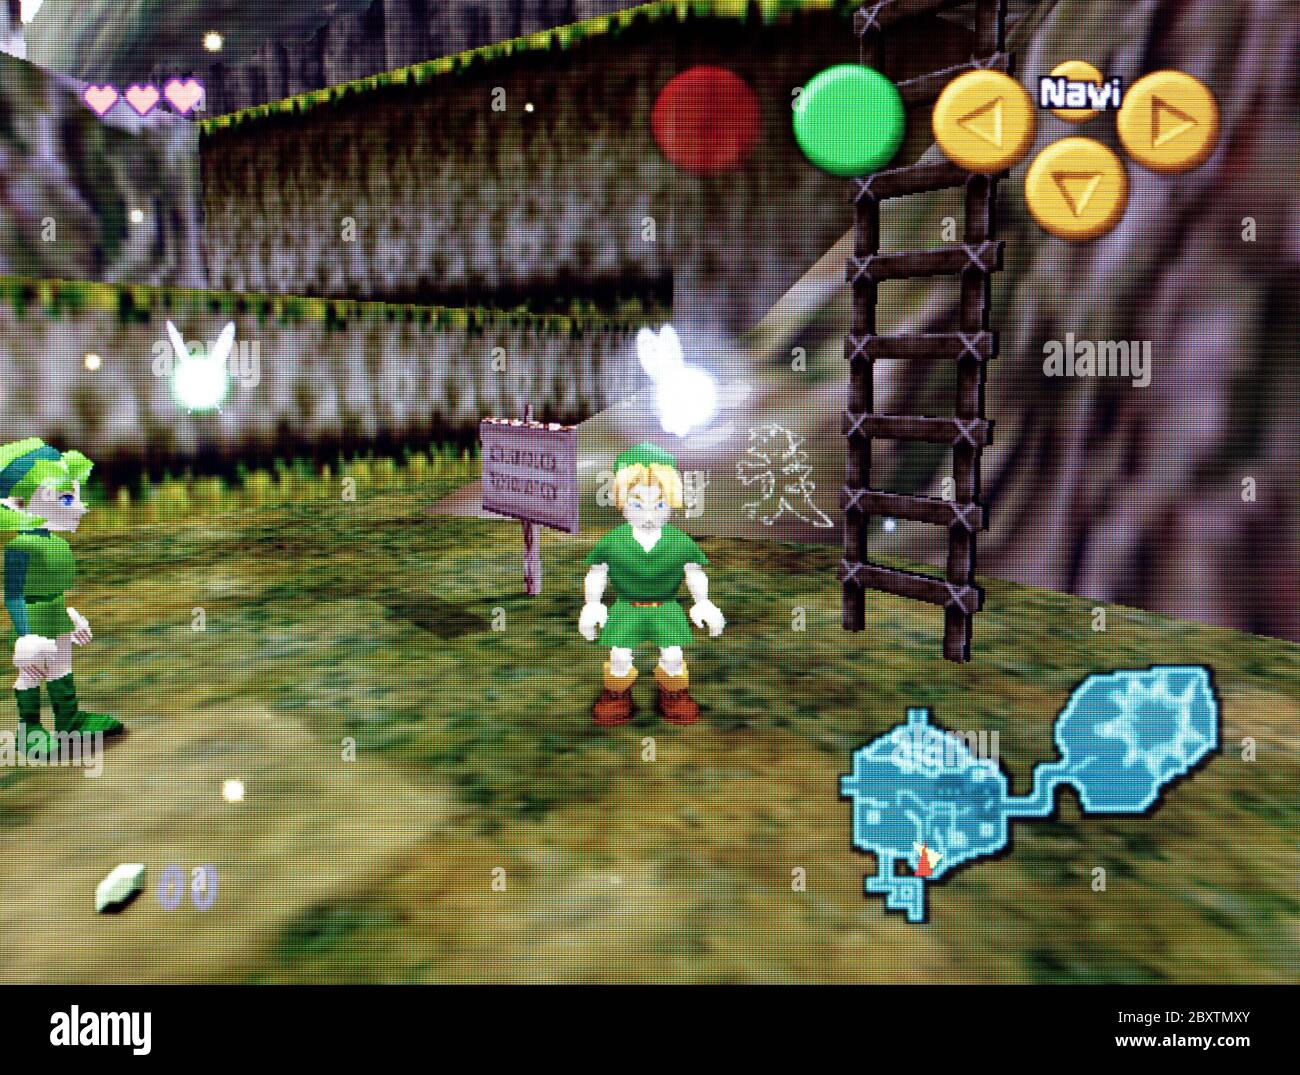 The Legend of Zelda: Ocarina of Time - Nintendo 64 Original vs